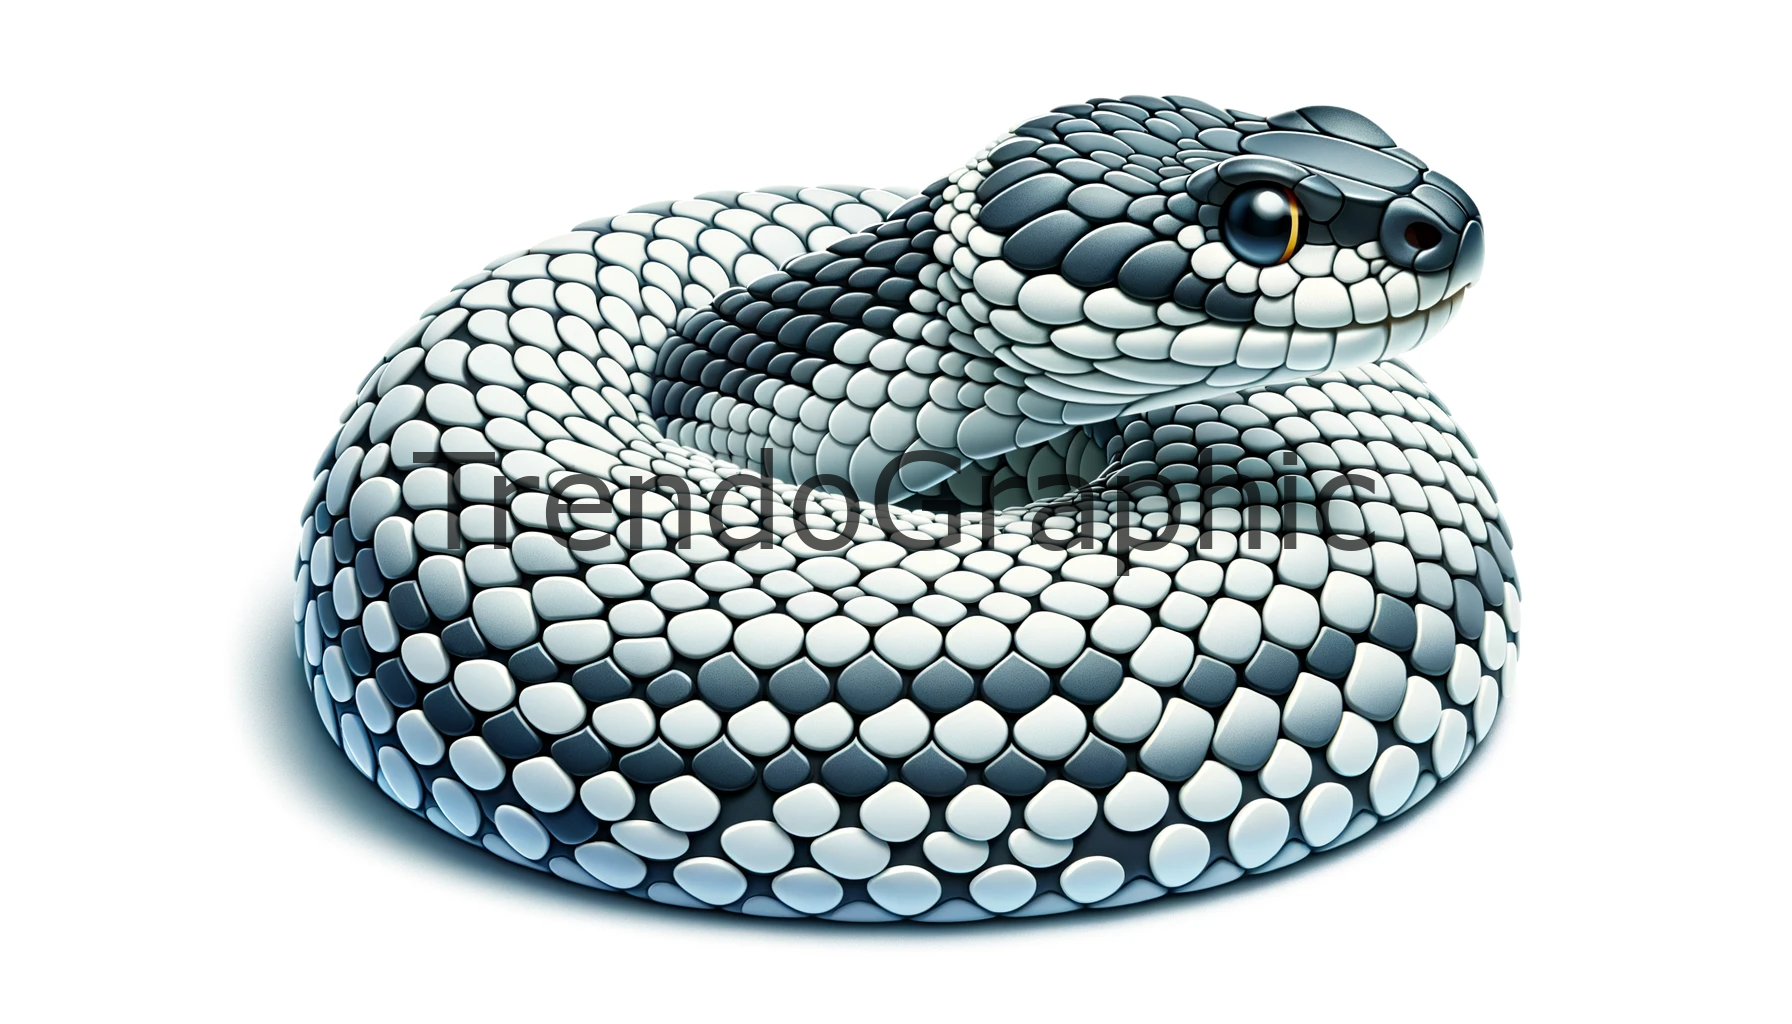 Stunning Macro View of Snake Skin